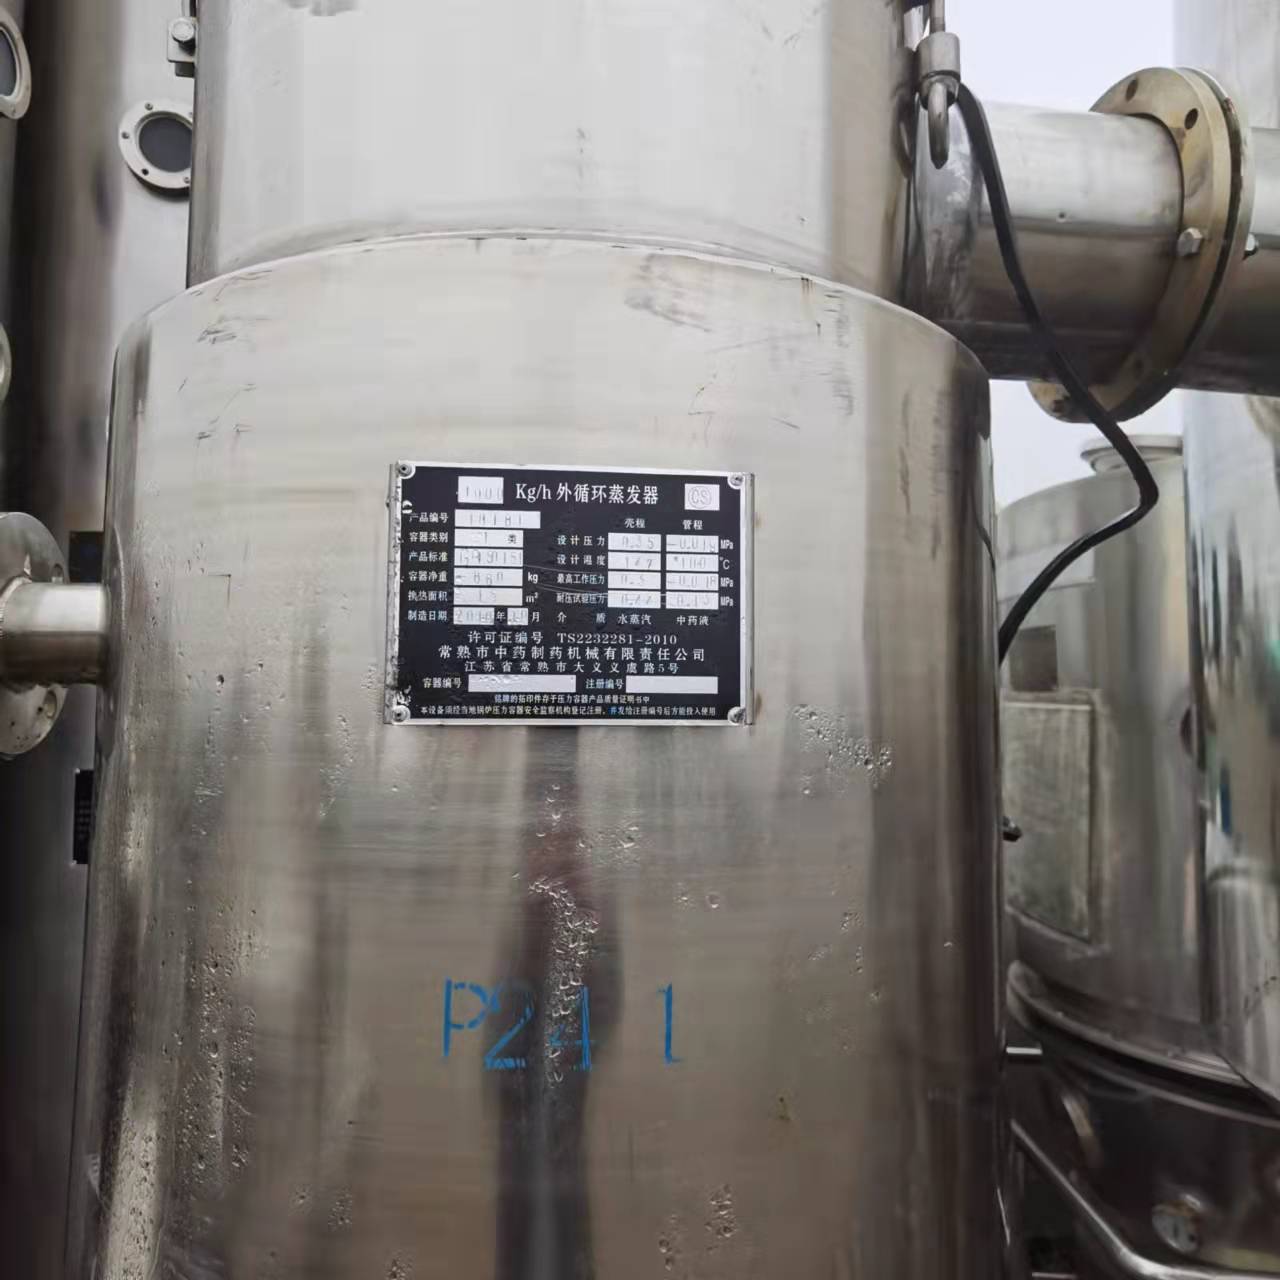 回收 二手蒸发器 二手强制循环蒸发器  二手污水蒸发器 嘉运二手设备 厂家直销